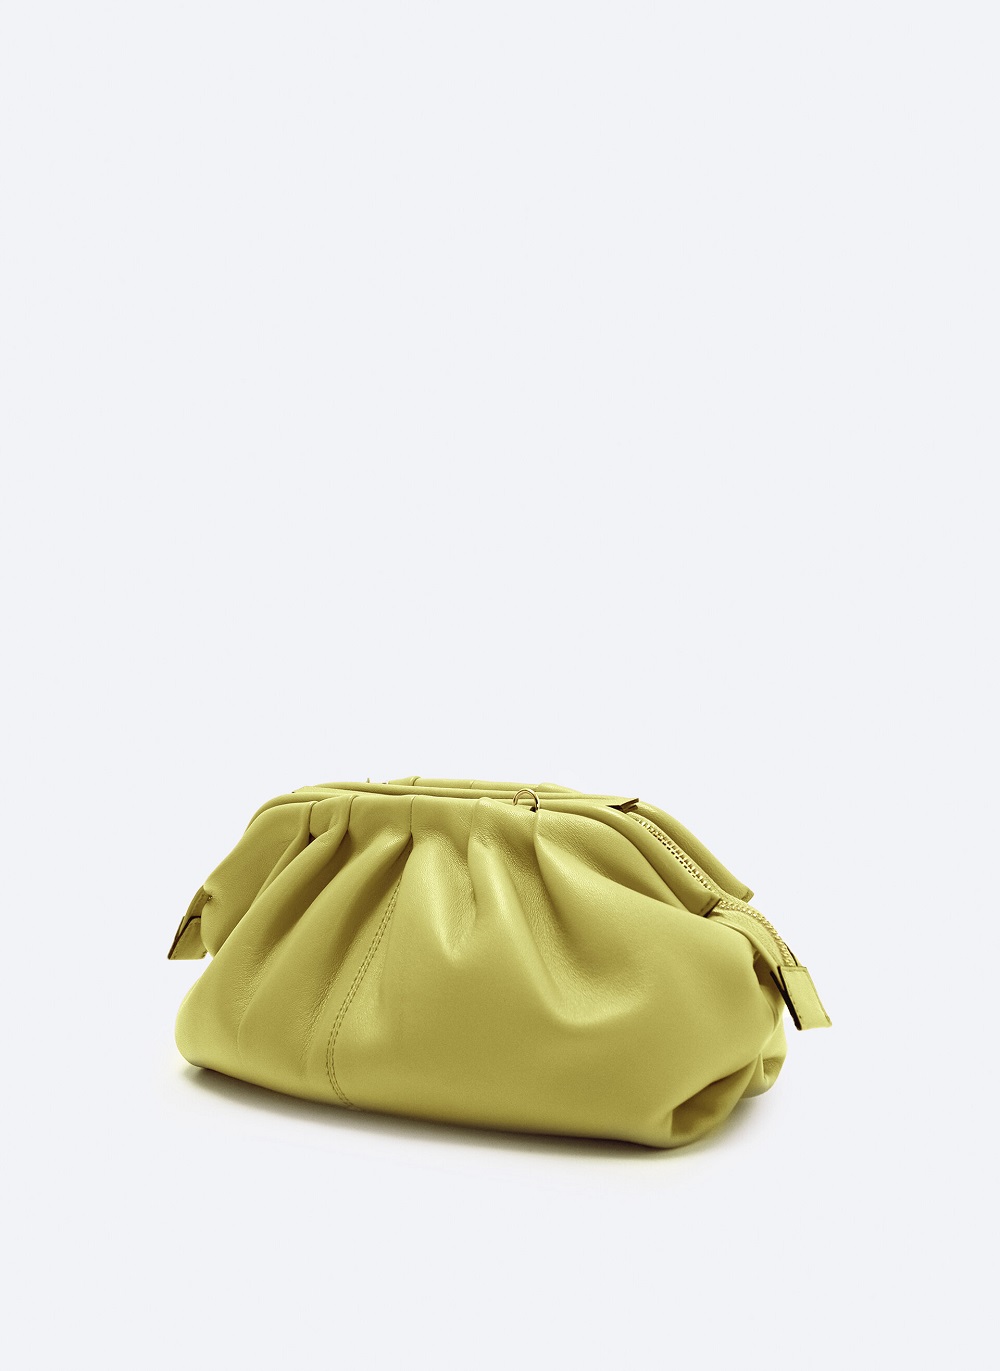 Uterque torbe u boji proljeće ljeto 2021.